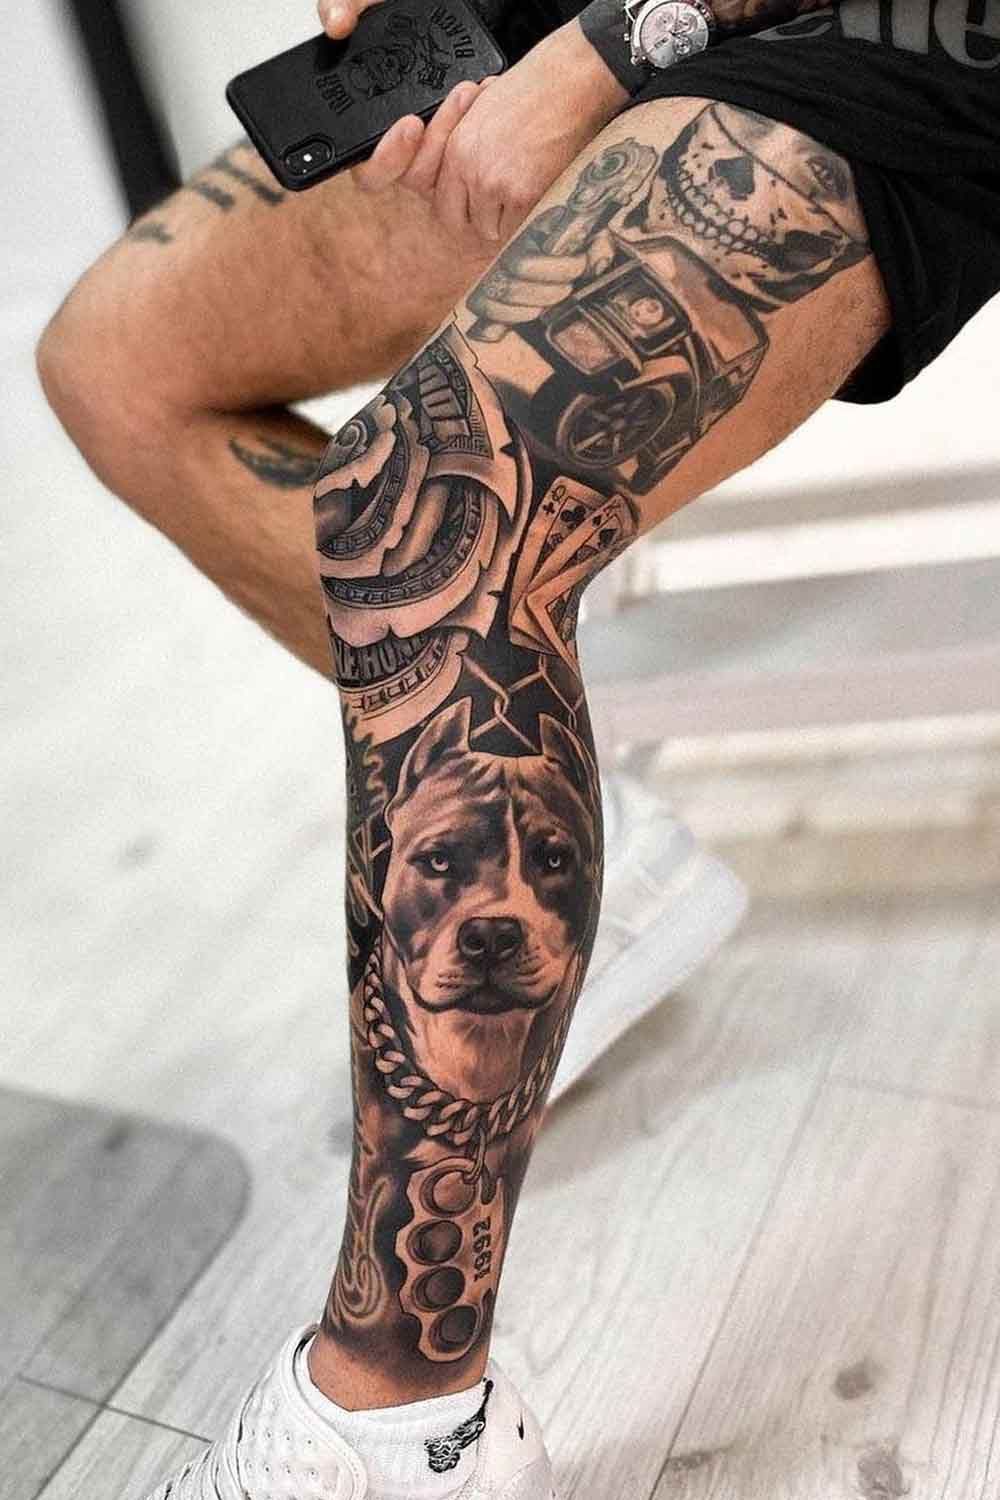 Badass leg tattoos for men